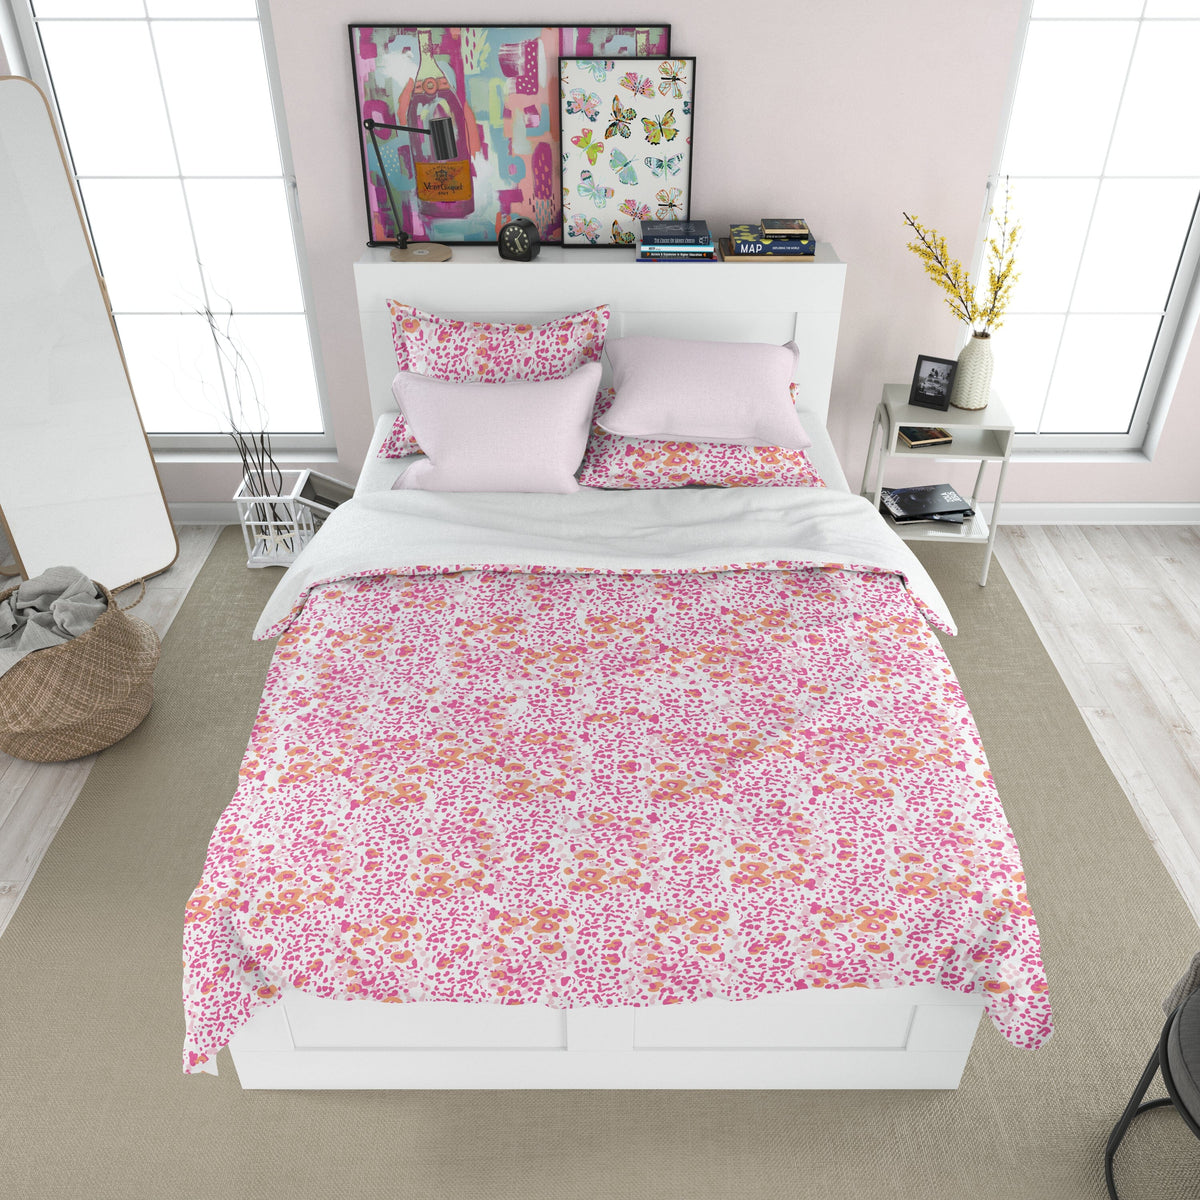 Duvet - Poppy Field Pink Bedding, Duvets MWW Full/Queen 